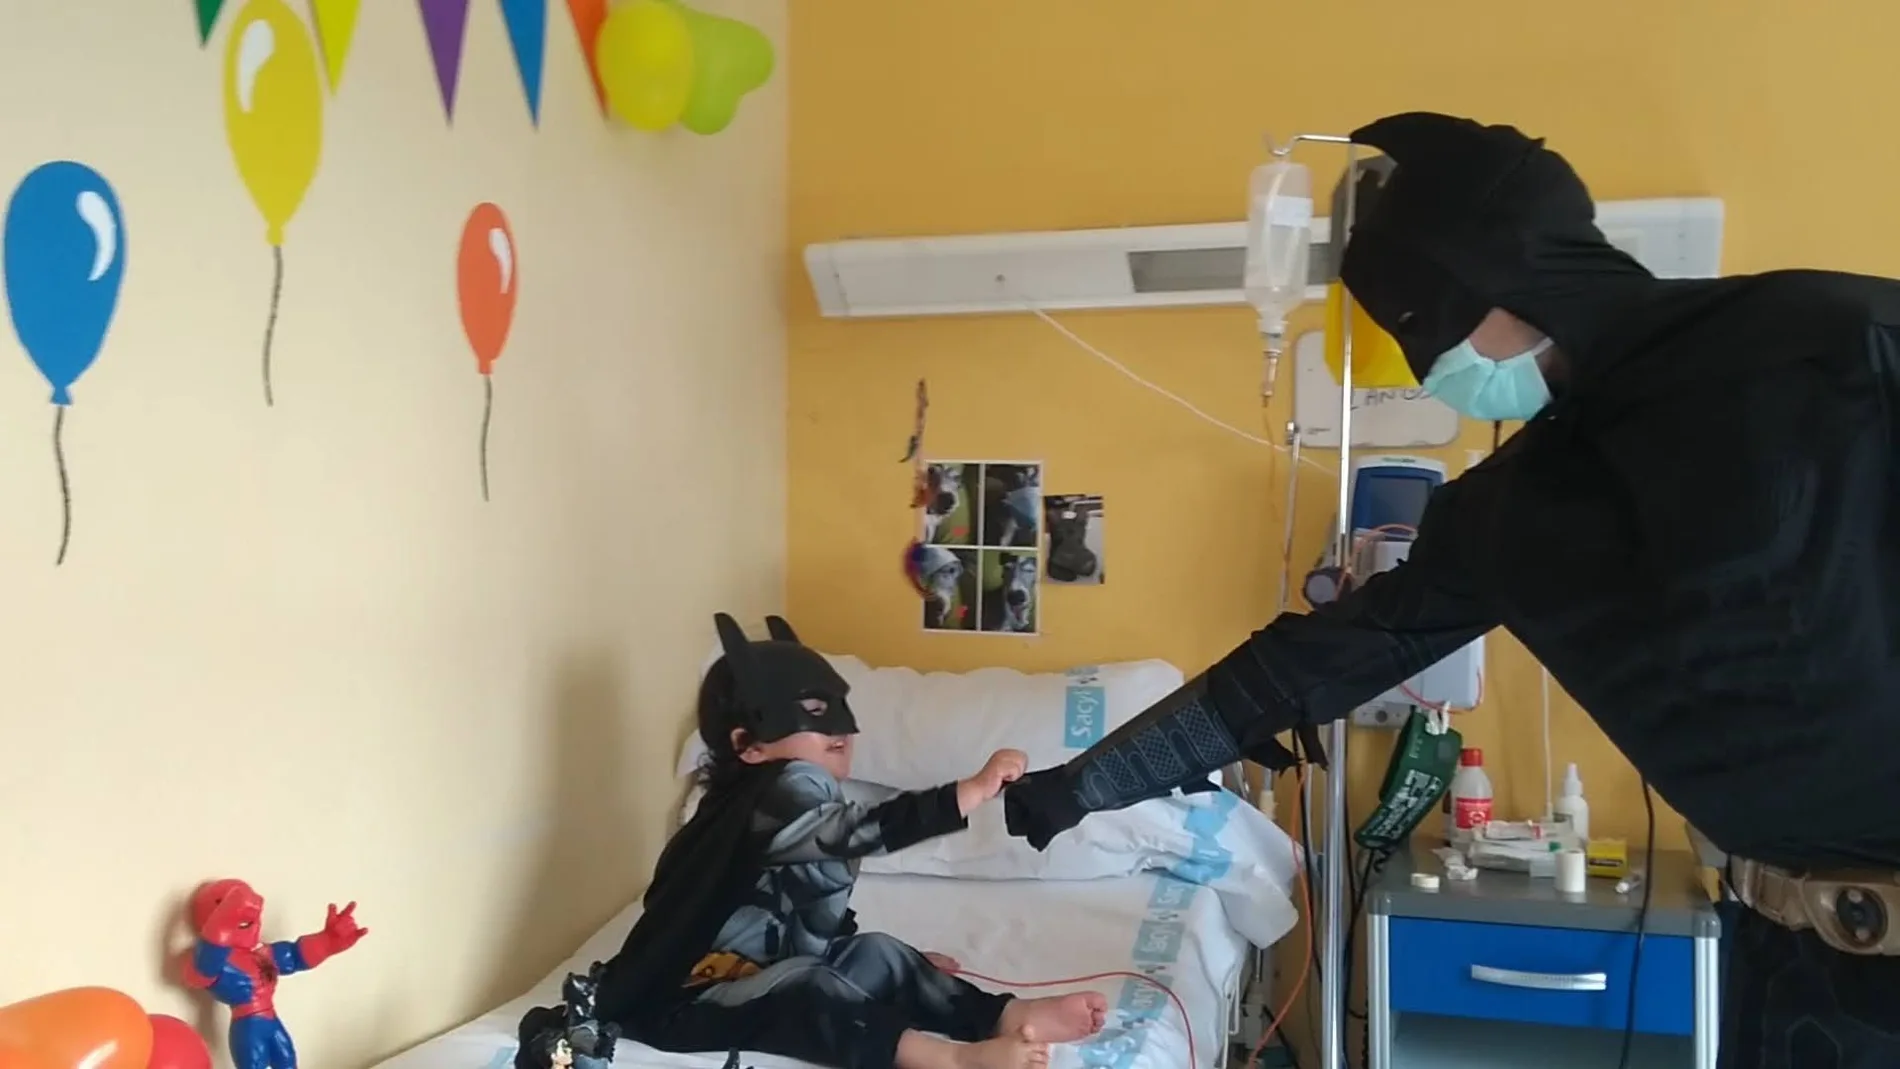 El enfermero José María González, disfrazado de Batman para hacer sonreír a un niño enfermo de cáncer en el Hospital Clínico de Valladolid